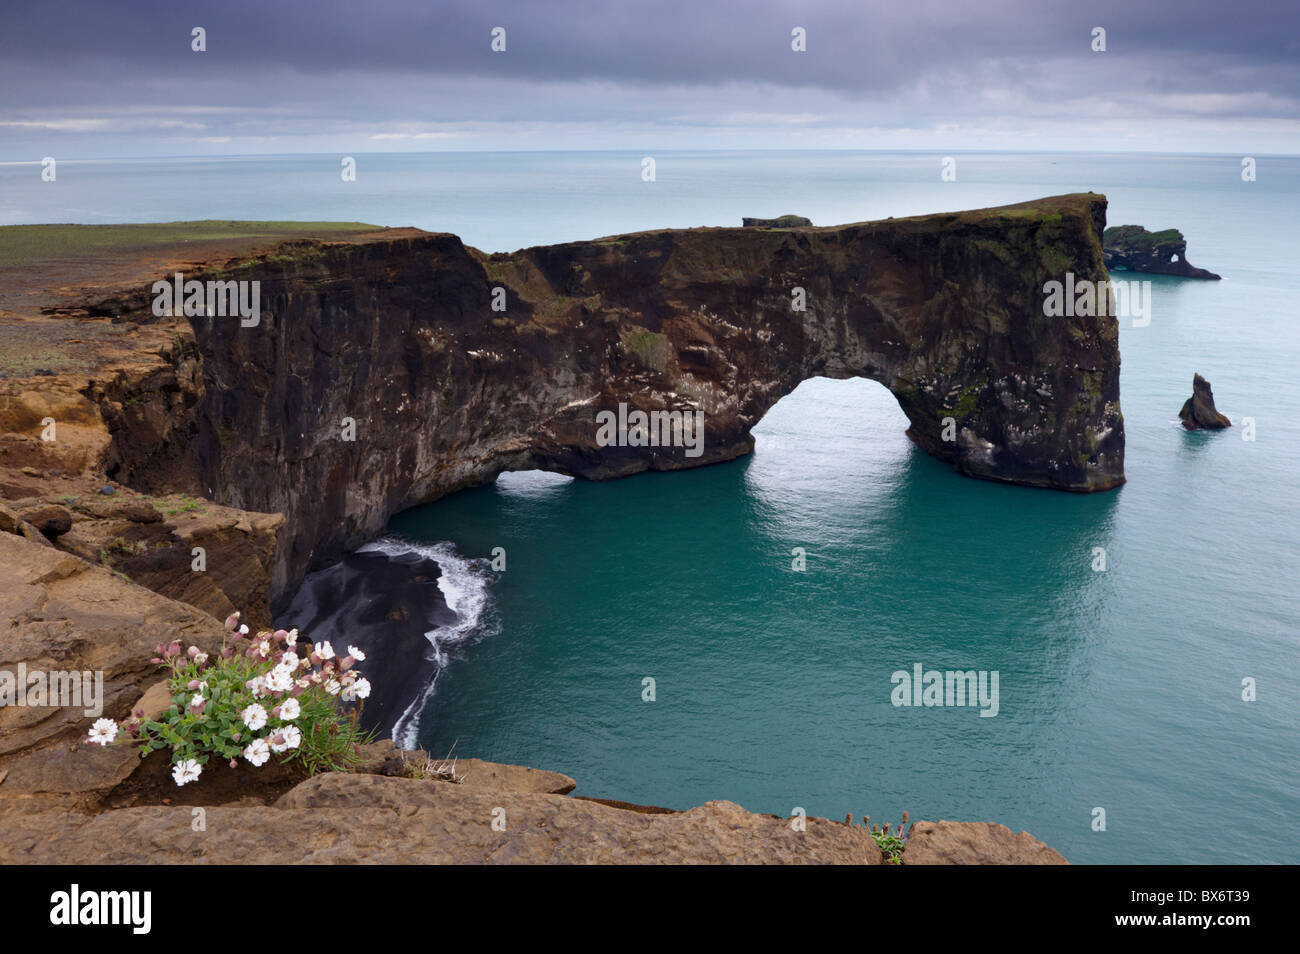 Dyrholaey Arco Naturale, il punto più meridionale in Islanda, vicino a VIK, nel sud dell'Islanda (Sudurland), Islanda, regioni polari Foto Stock